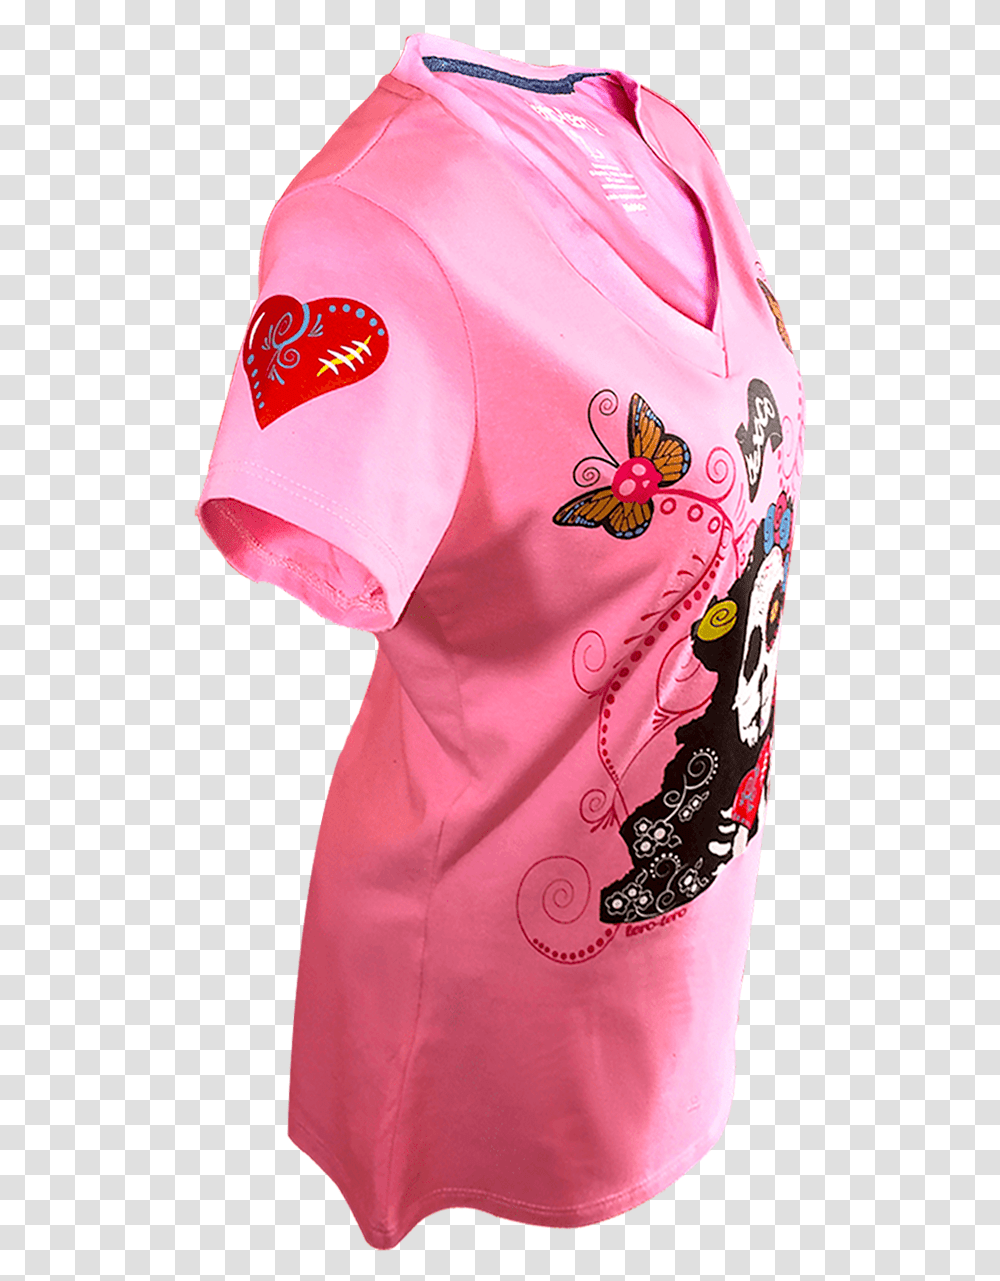 Imagen De Lado Izquierdo De Una Playera En Color Rosa Backpack, Apparel, Shirt, Dress Transparent Png